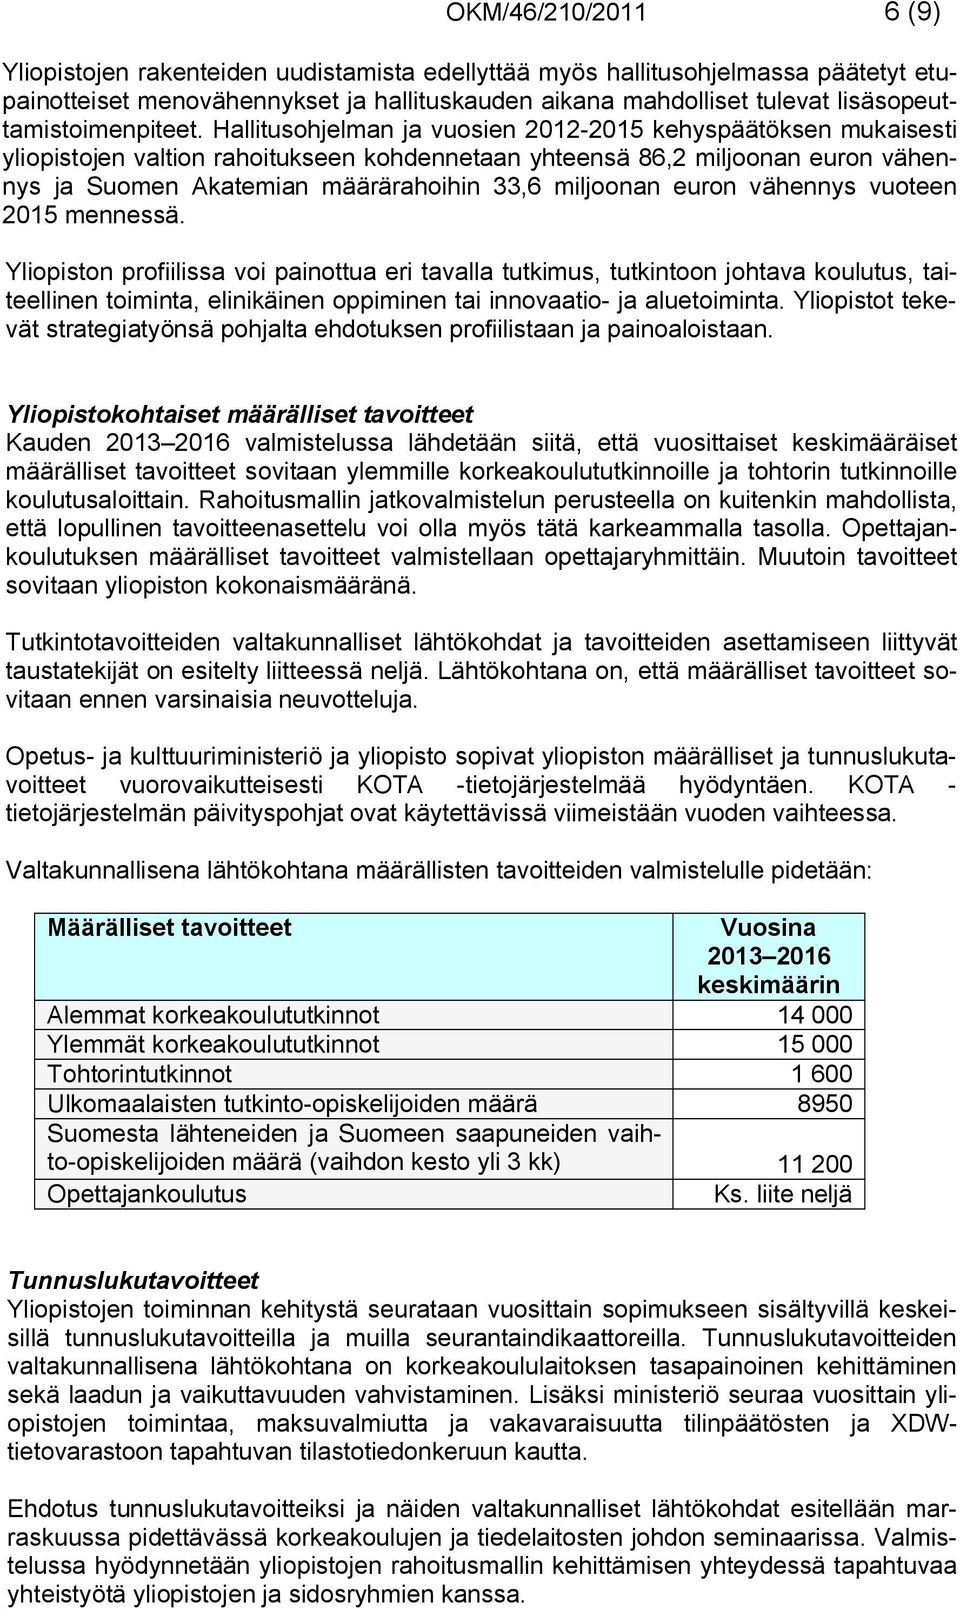 Hallitusohjelman ja vuosien 2012-2015 kehyspäätöksen mukaisesti yliopistojen valtion rahoitukseen kohdennetaan yhteensä 86,2 miljoonan euron vähennys ja Suomen Akatemian määrärahoihin 33,6 miljoonan